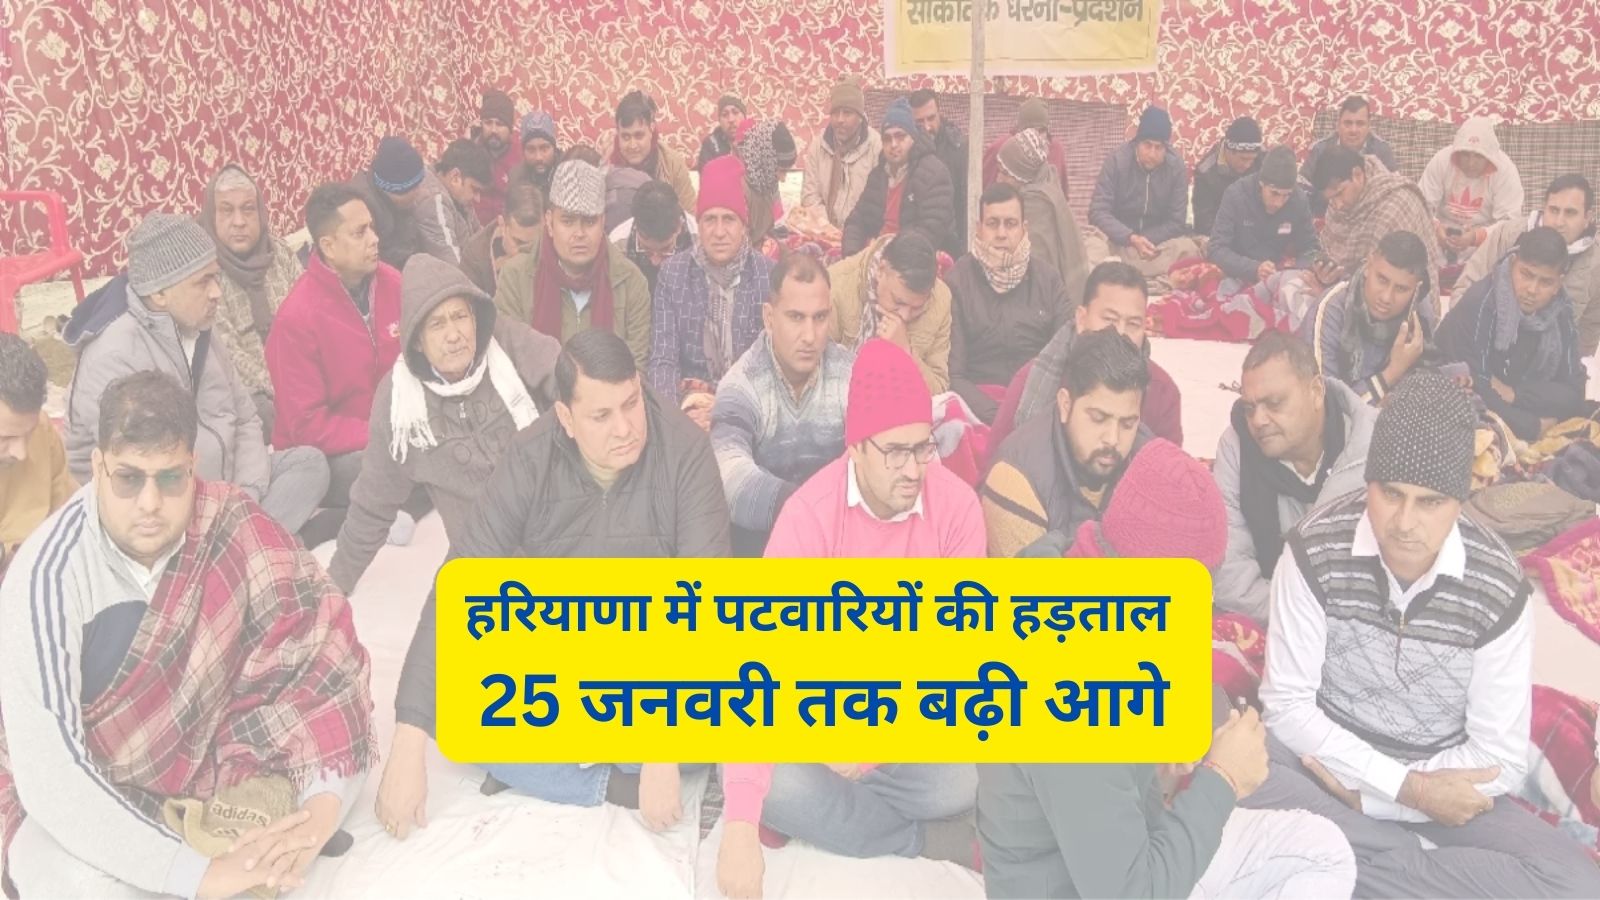 Patwari Strike In Haryana:हरियाणा में पटवारियों की हड़ताल 25 जनवरी तक बढ़ी आगे,जानिए हड़ताल का कारण